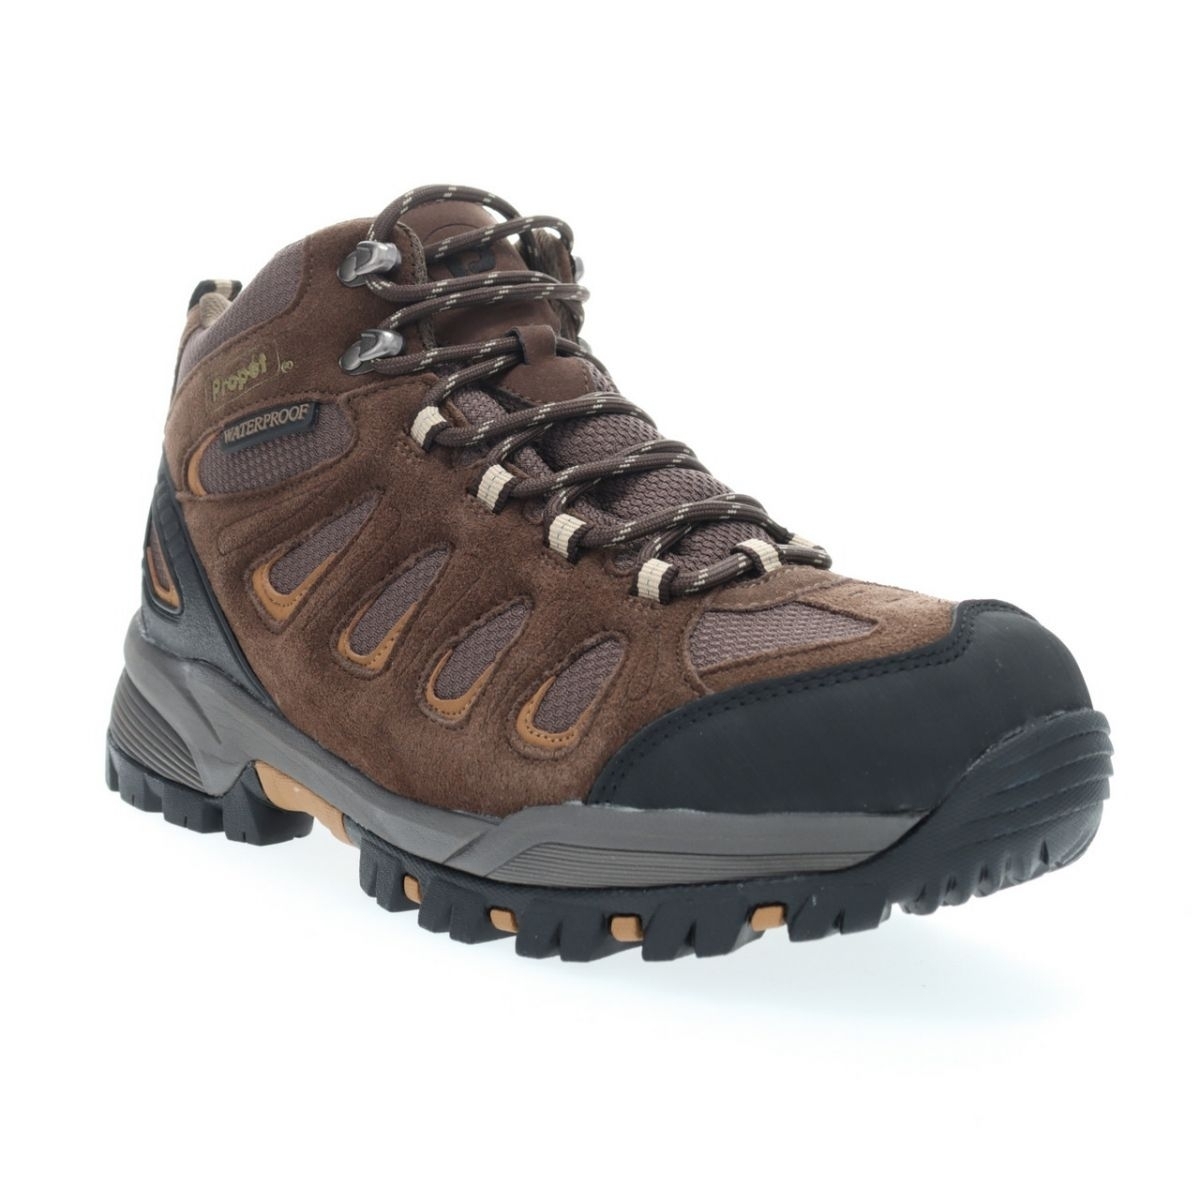 Propet Men's Ridge Walker Hiking Boot Brown - M3599BR 8 XX US Men BROWN - BROWN, 15